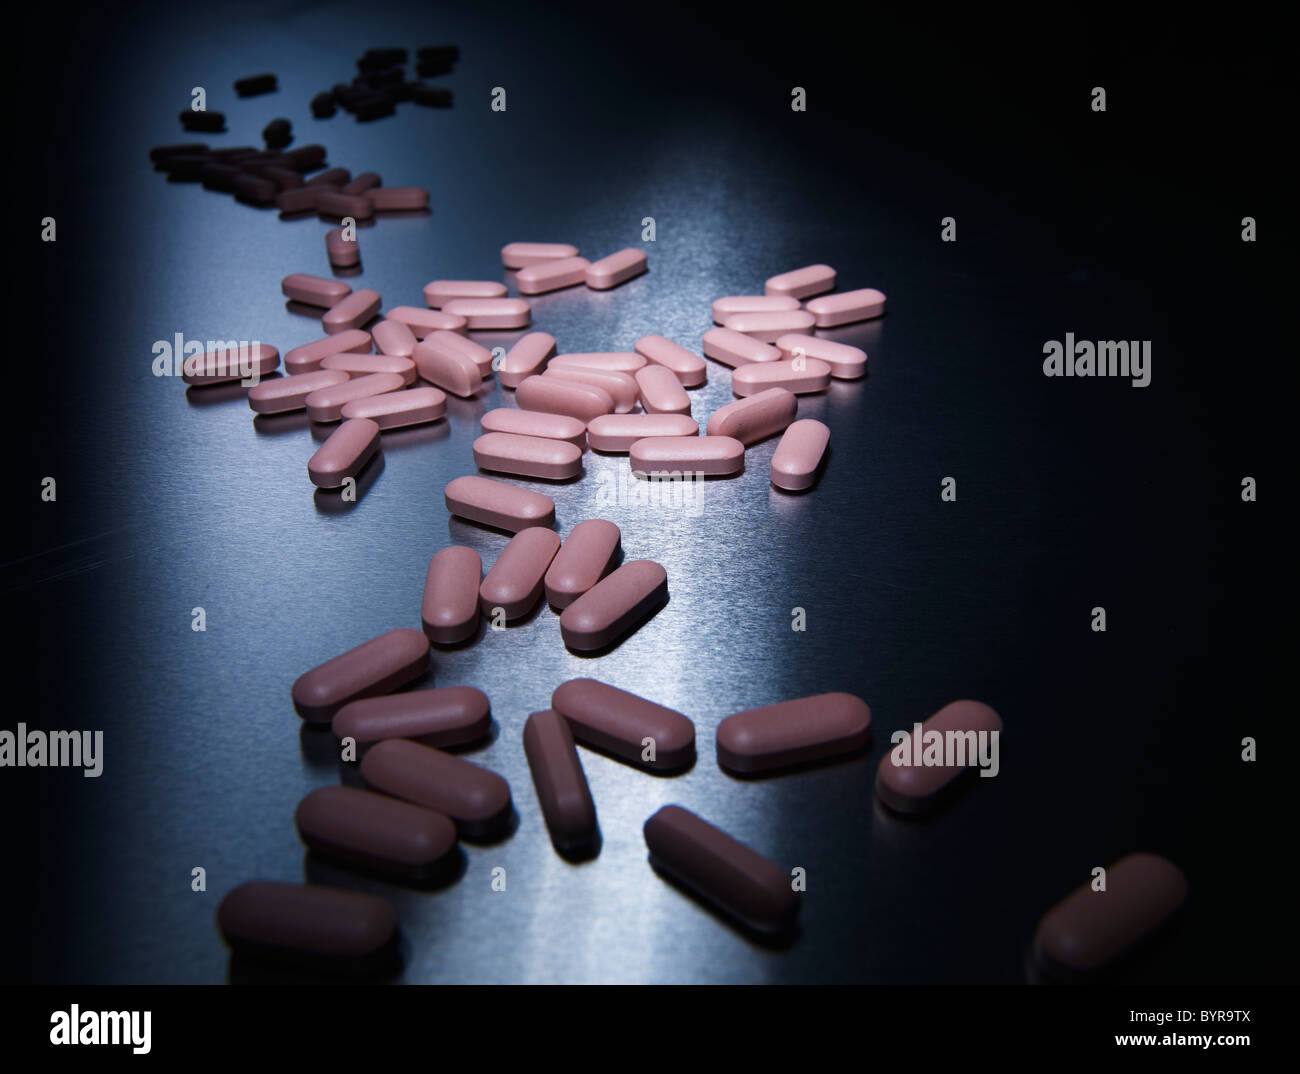 pink pills on aluminium Stock Photo